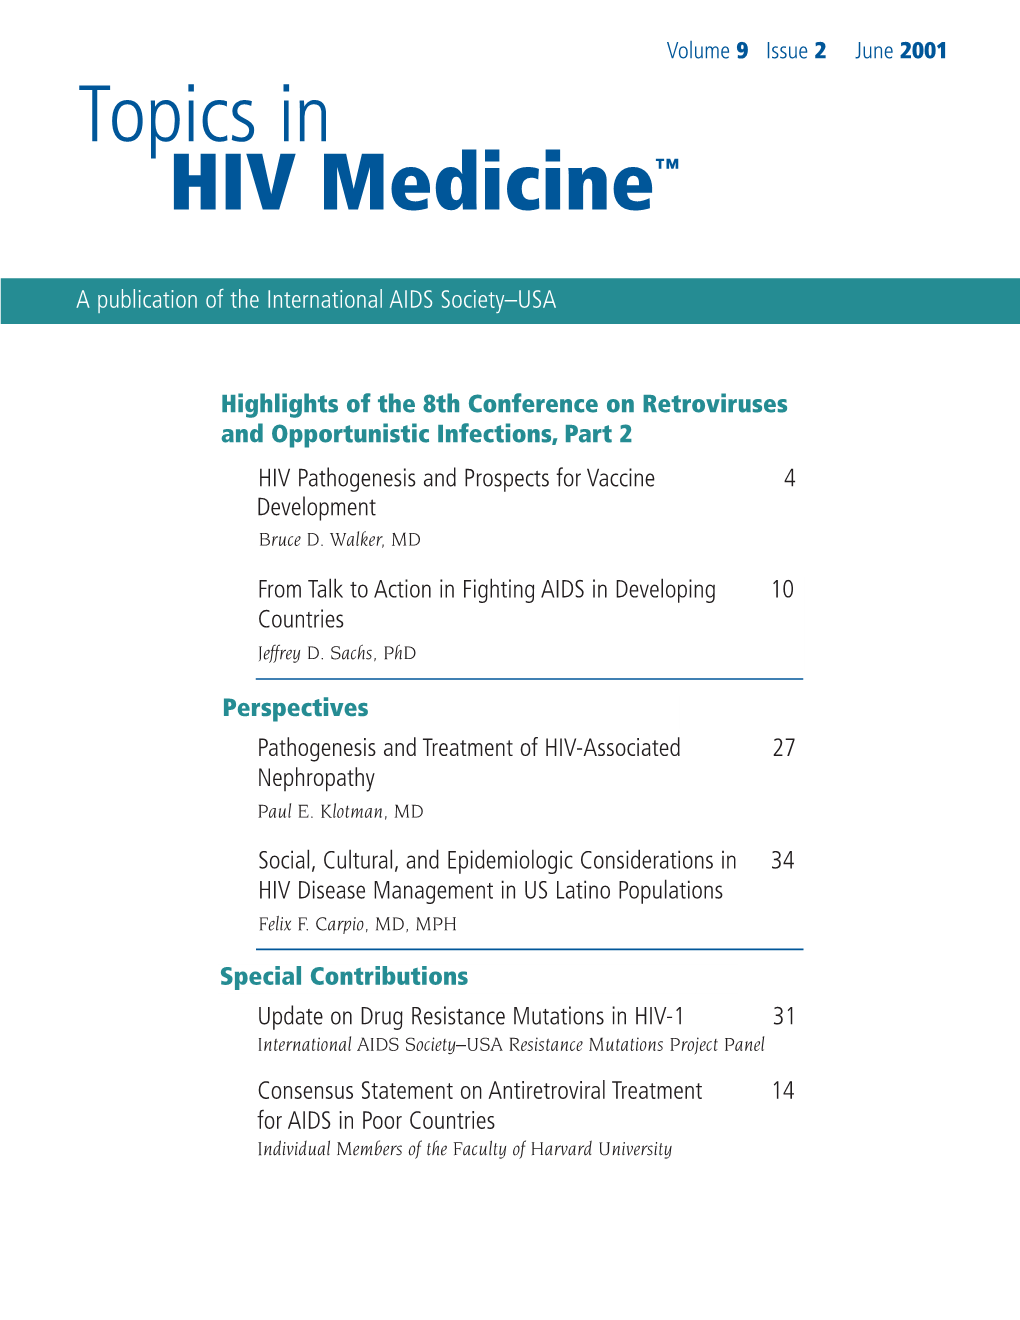 Topics in HIV Medicine™